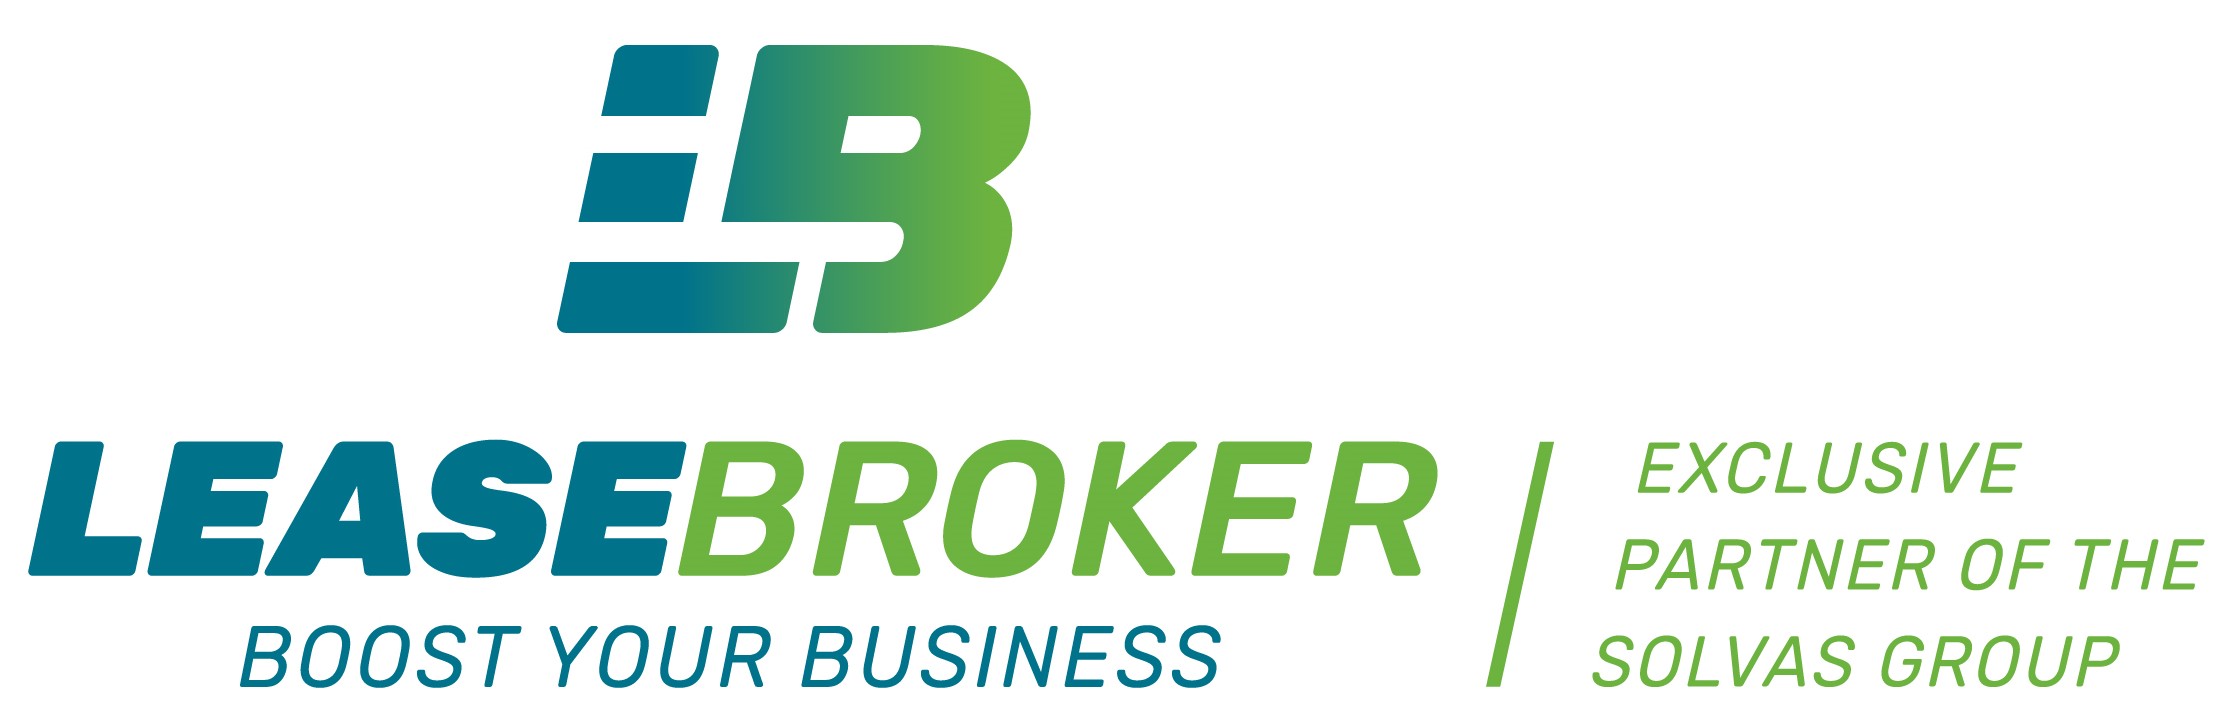 Lease-broker